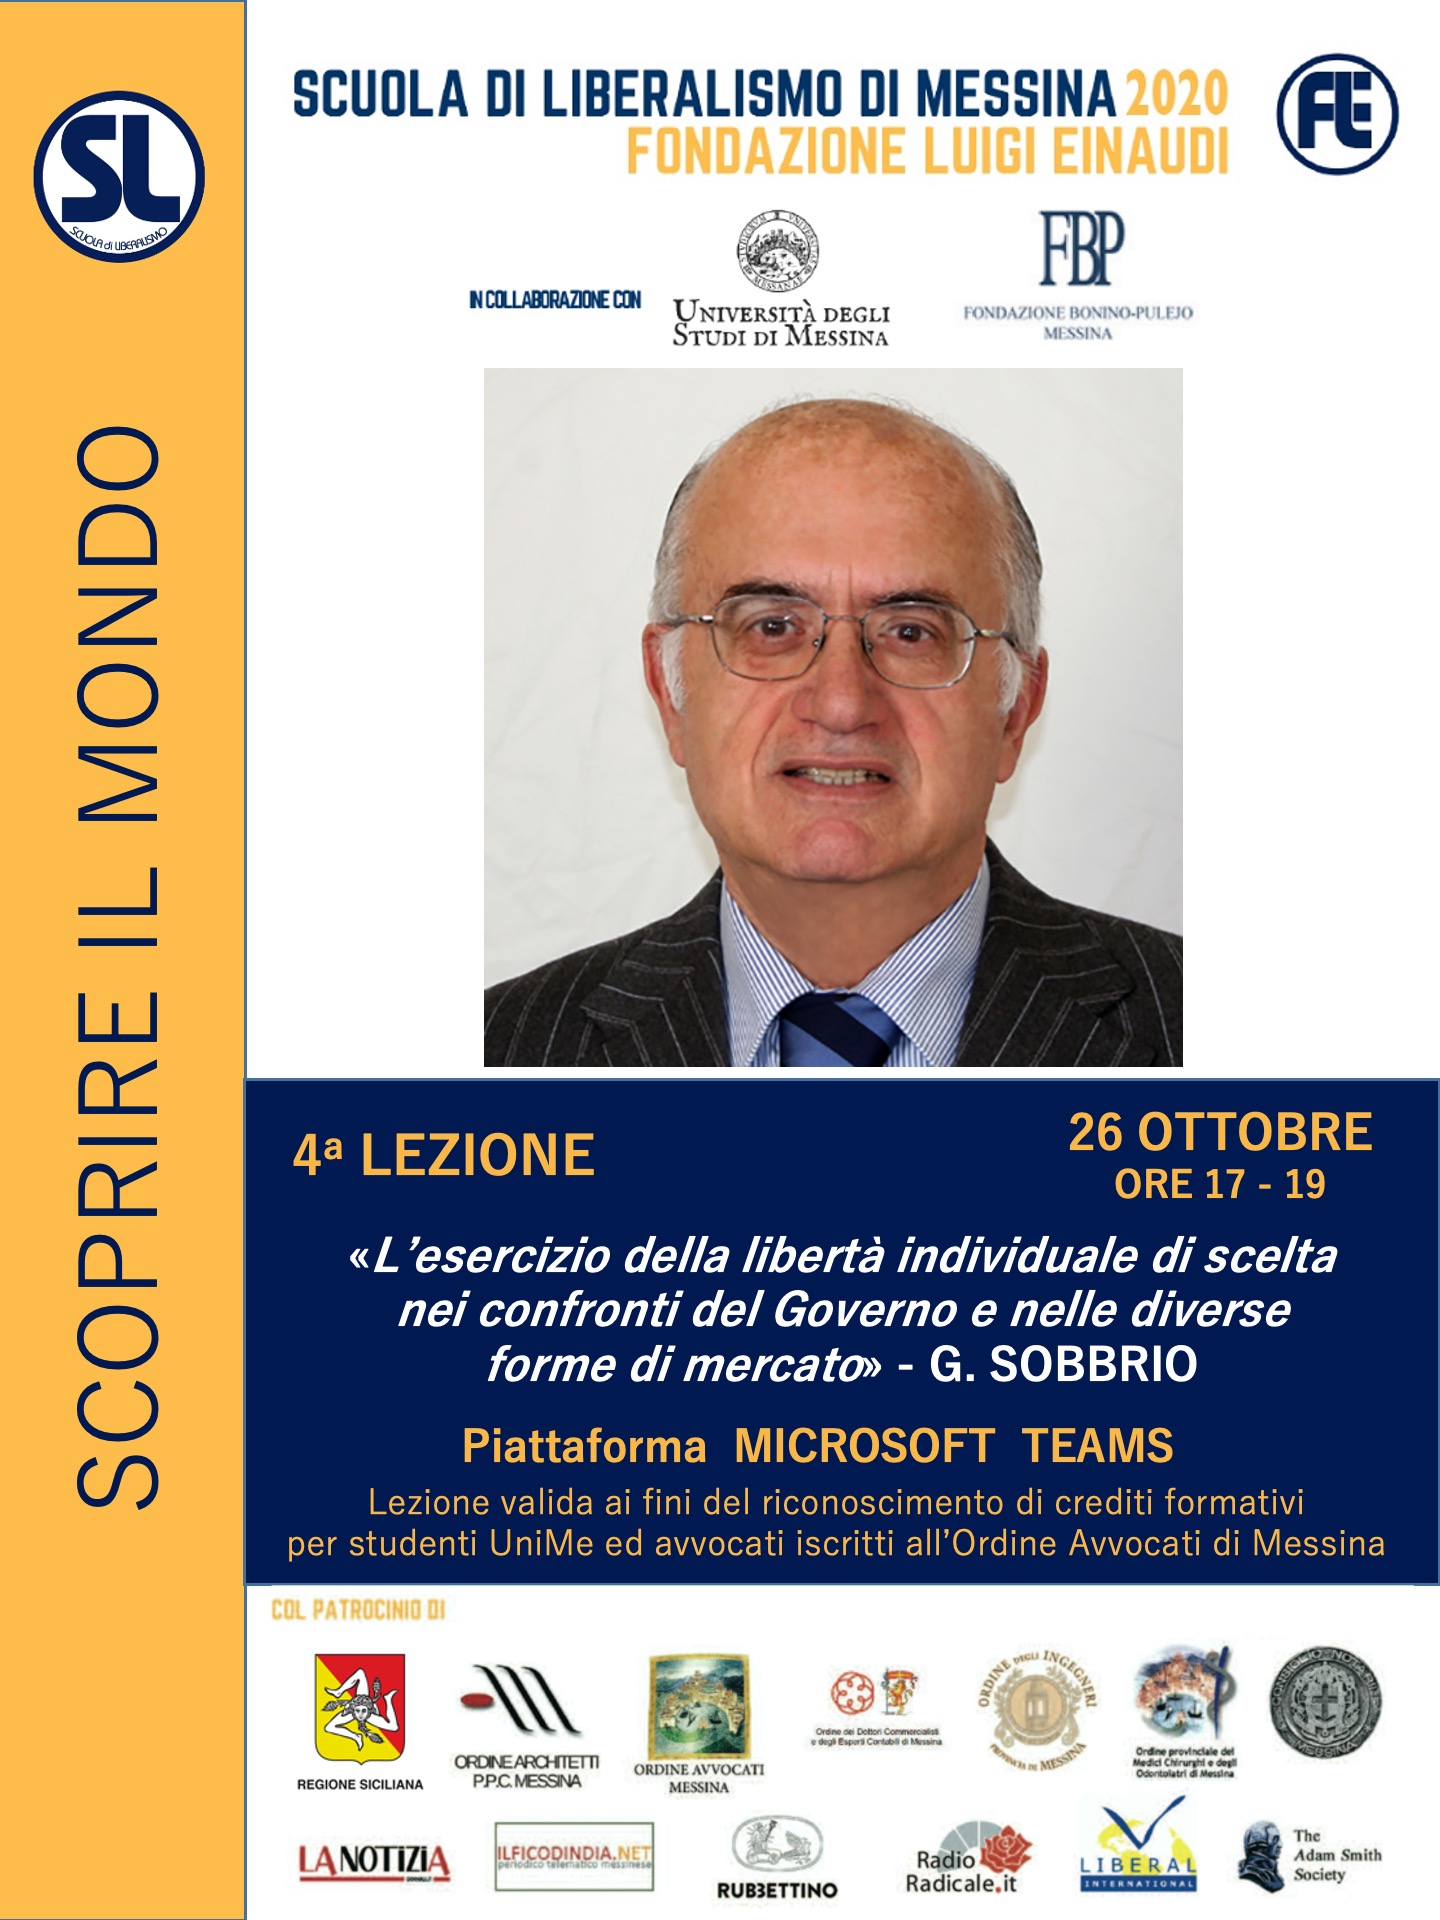 Scuola di Liberalismo 2020 Messina: 26 ottobre lezione di Giuseppe Sobbrio